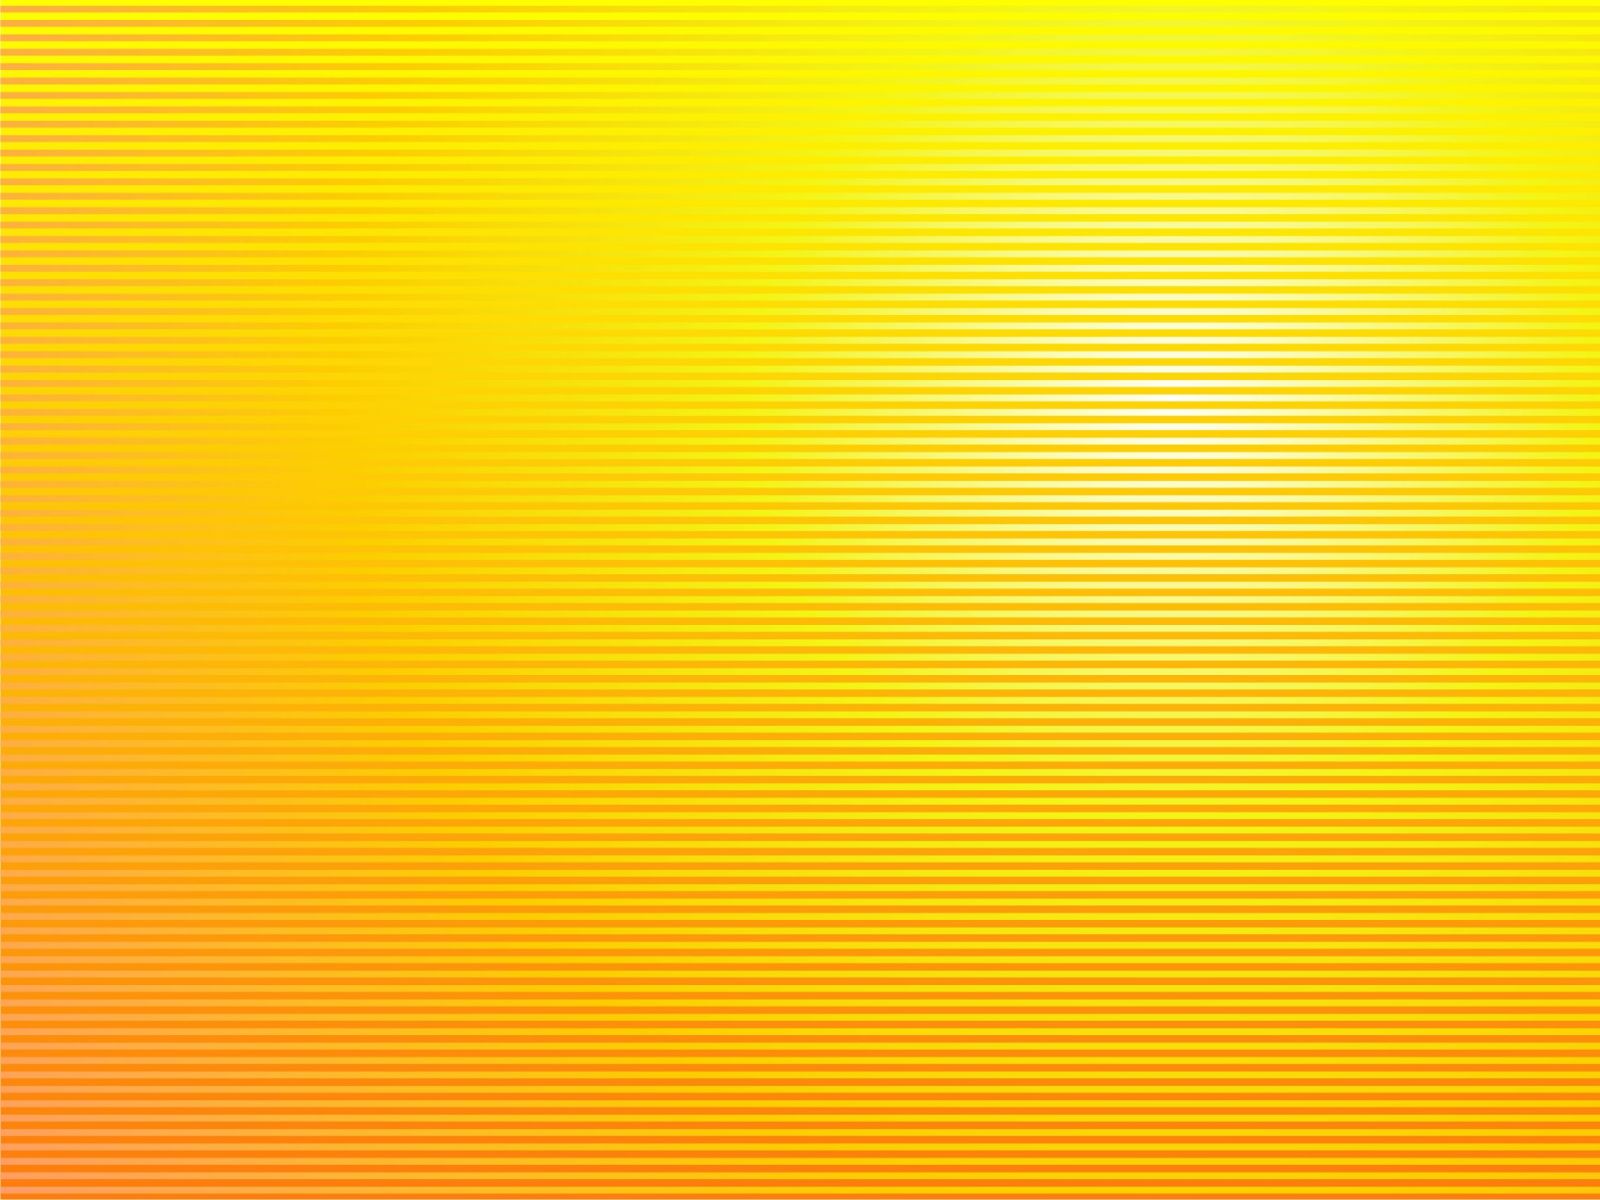 Black and Yellow HD Wallpaper - WallpaperSafari